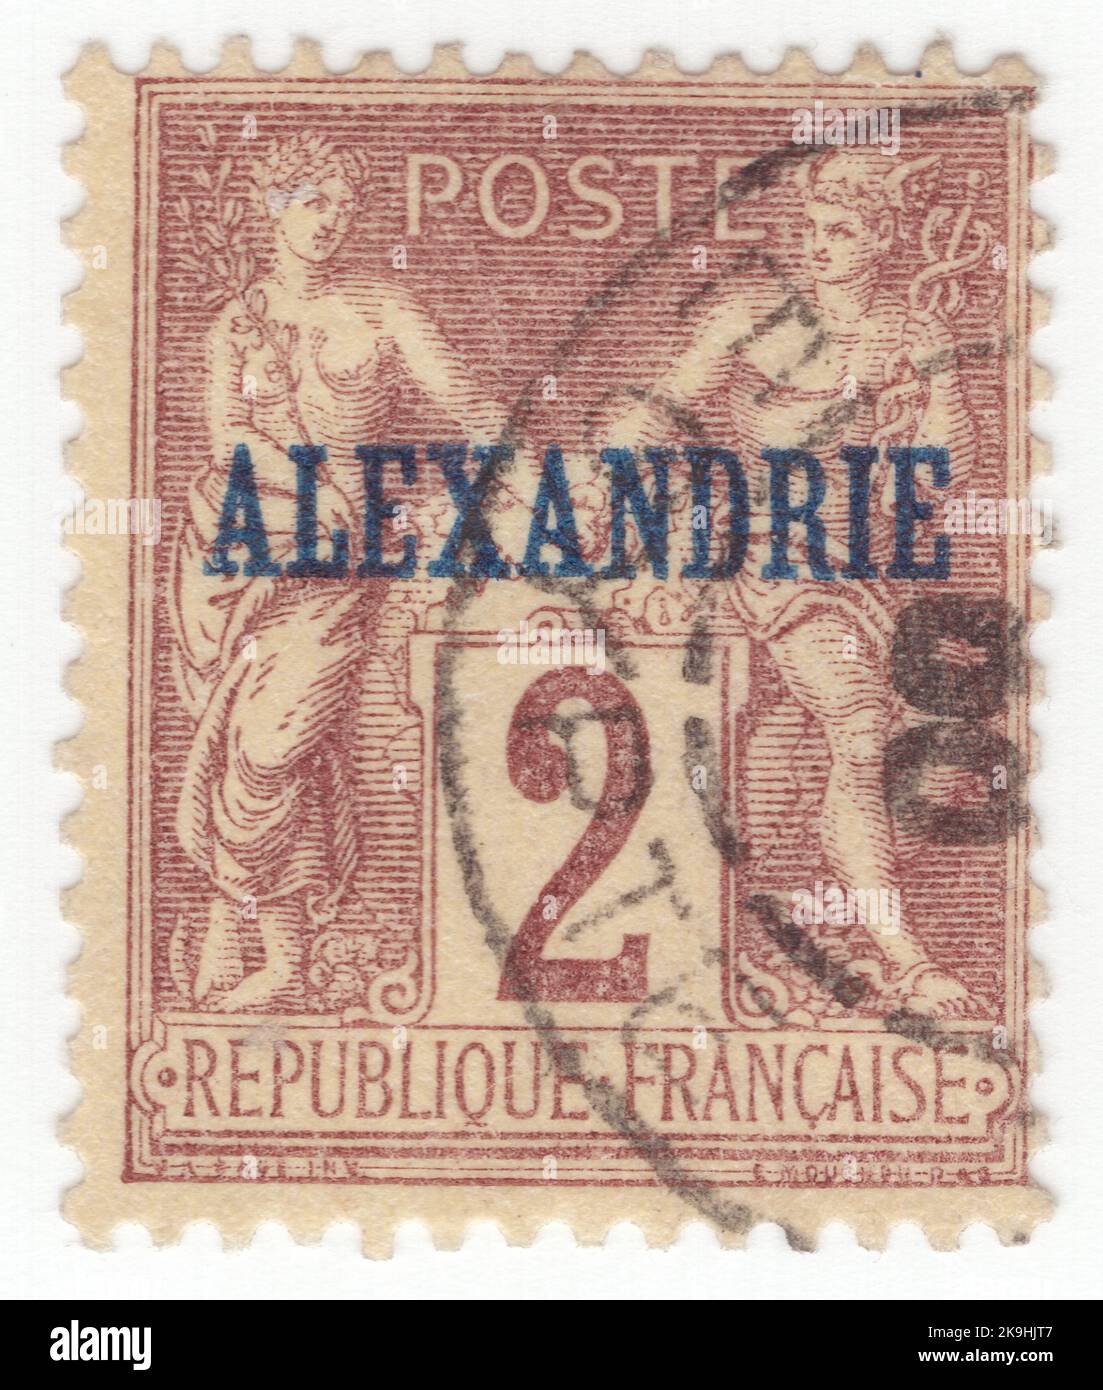 Francobolli rari francia immagini e fotografie stock ad alta risoluzione -  Alamy